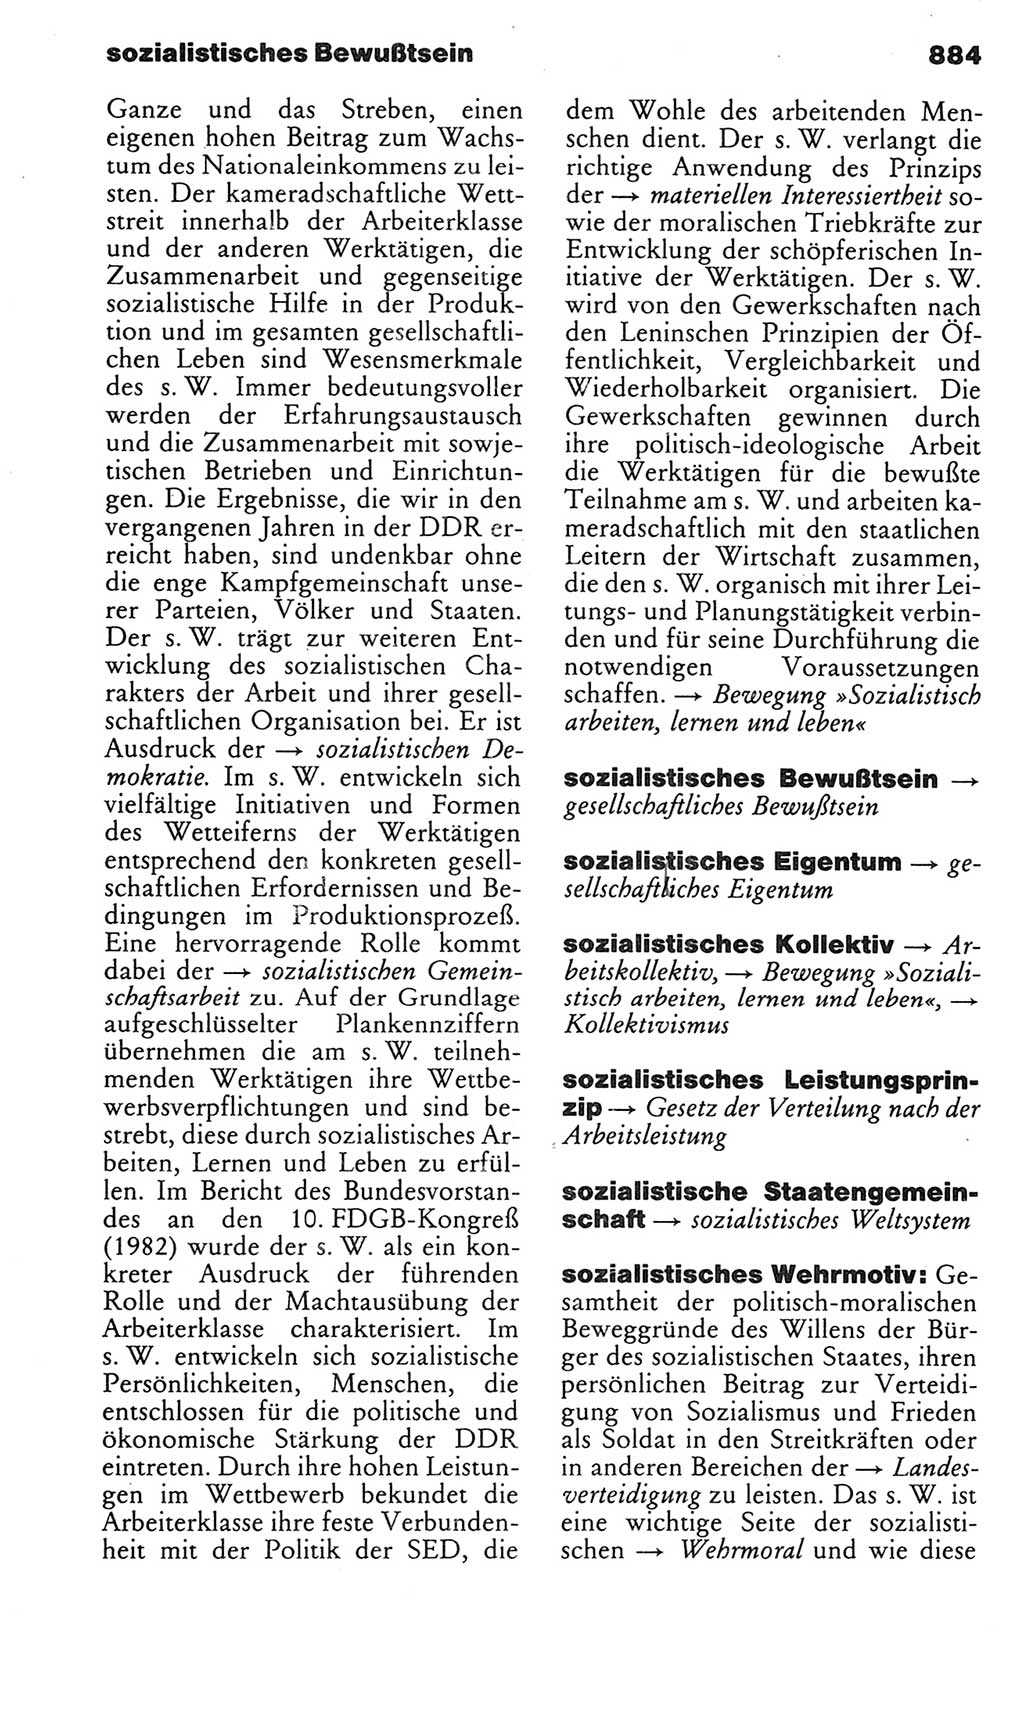 Kleines politisches Wörterbuch [Deutsche Demokratische Republik (DDR)] 1983, Seite 884 (Kl. pol. Wb. DDR 1983, S. 884)